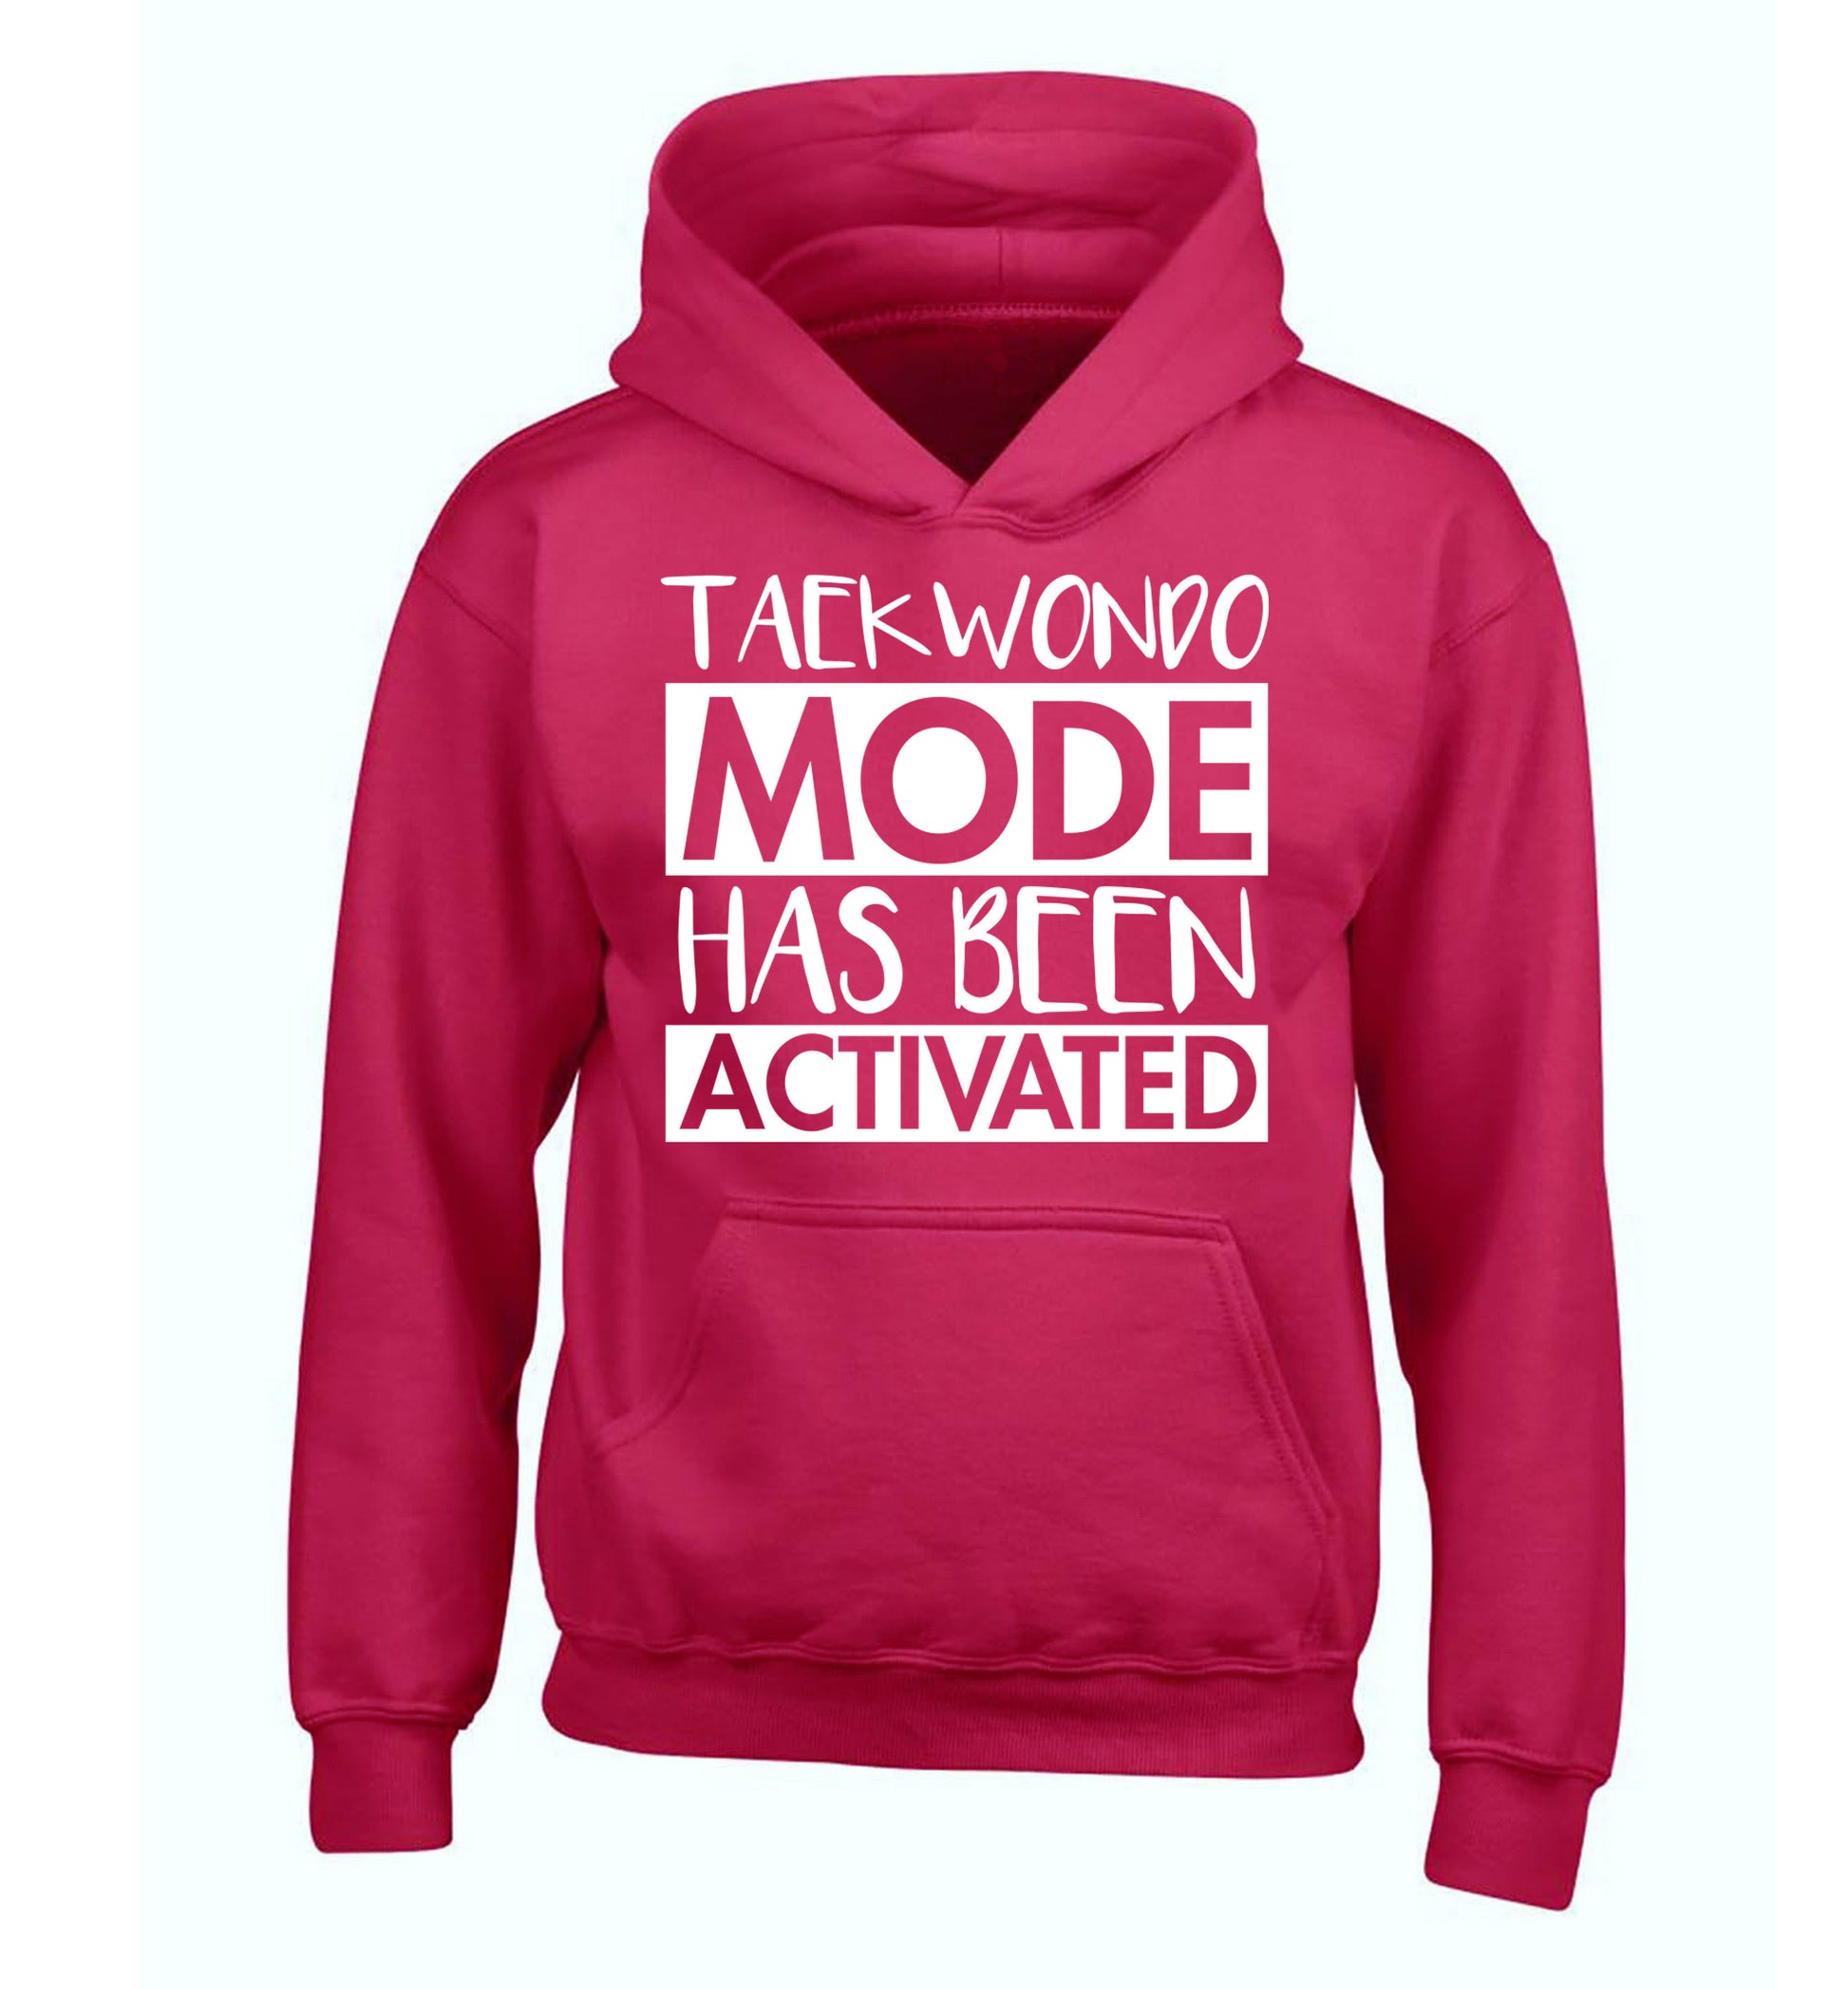 Taekwondo mode activated children's pink hoodie 12-14 Years